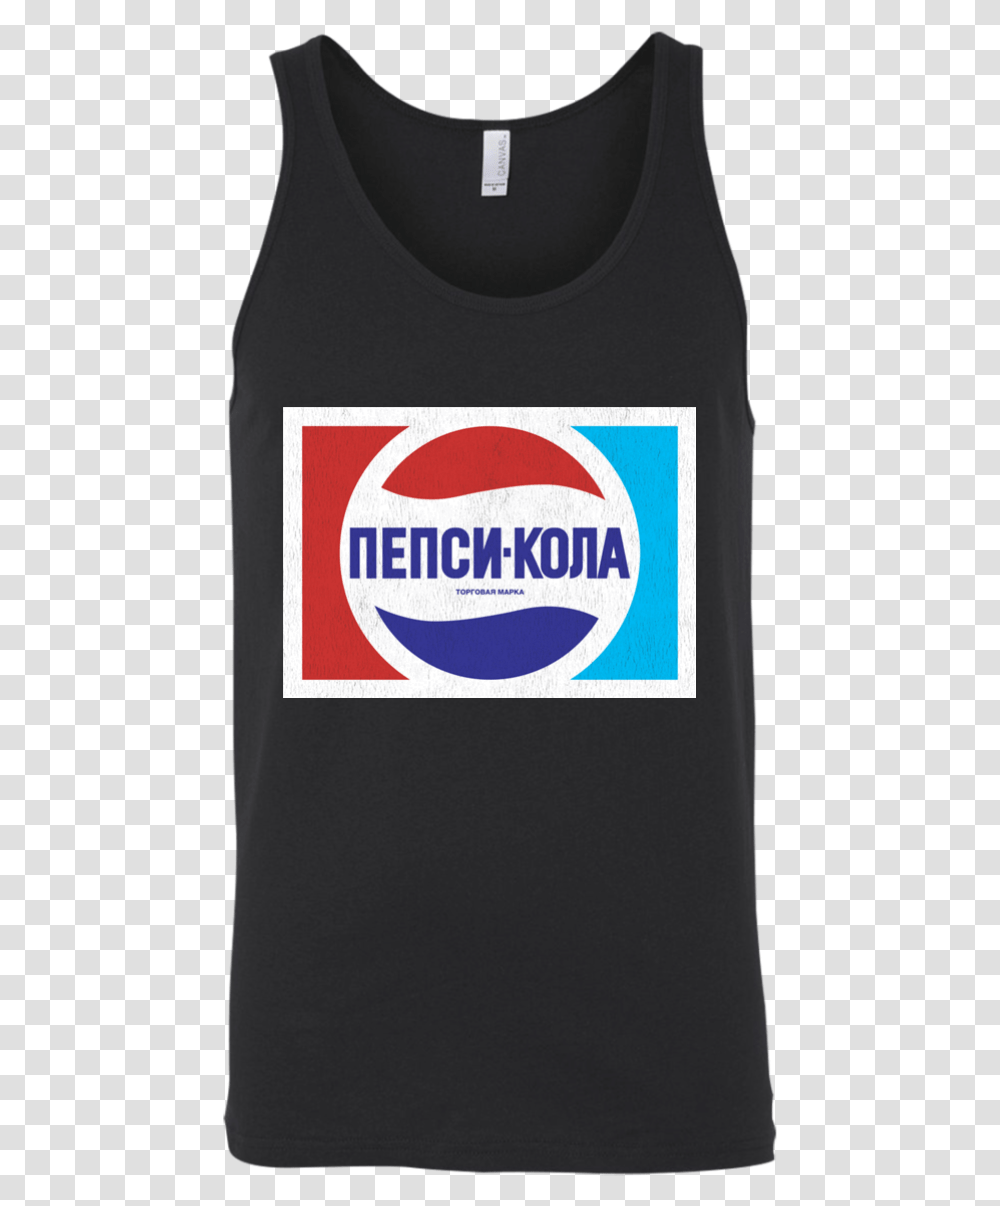 Russia Ussr Soviet Union Pepsi Cola Retro Logo Pepsi, Label, Soda, Beverage Transparent Png